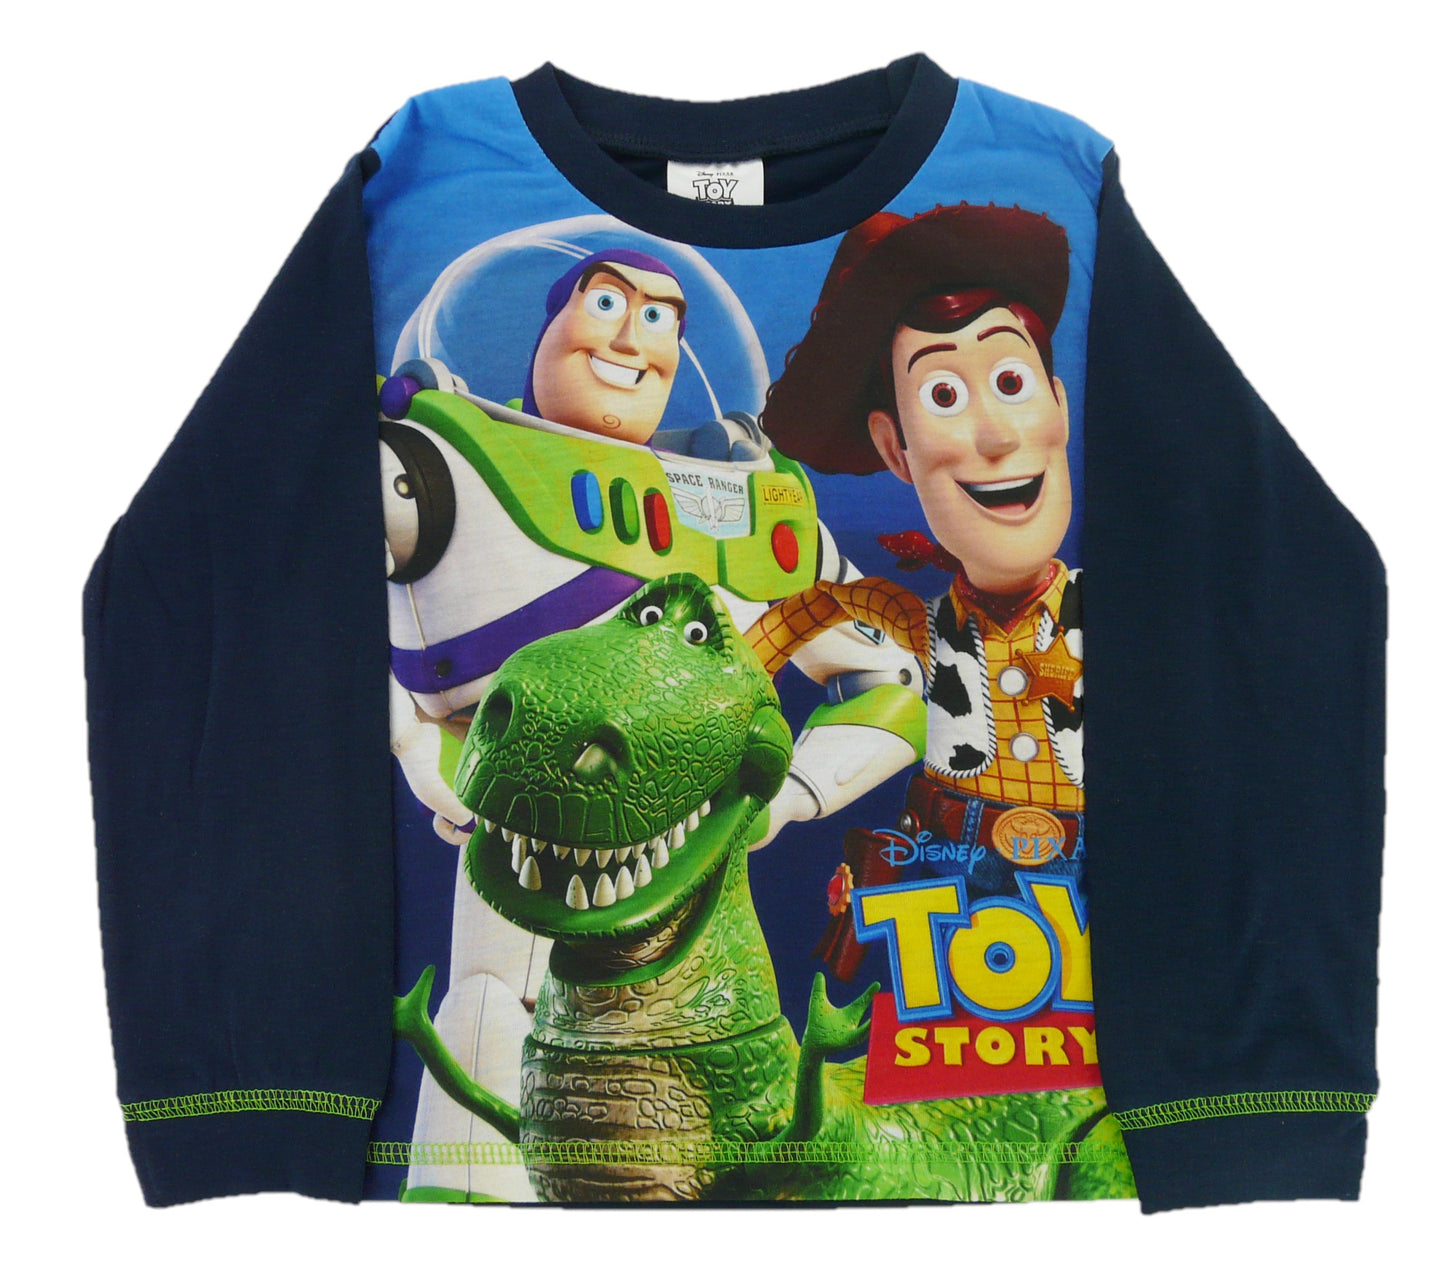 Disney Toy Story "Smile" Boys 2 Piece Pyjamas Set